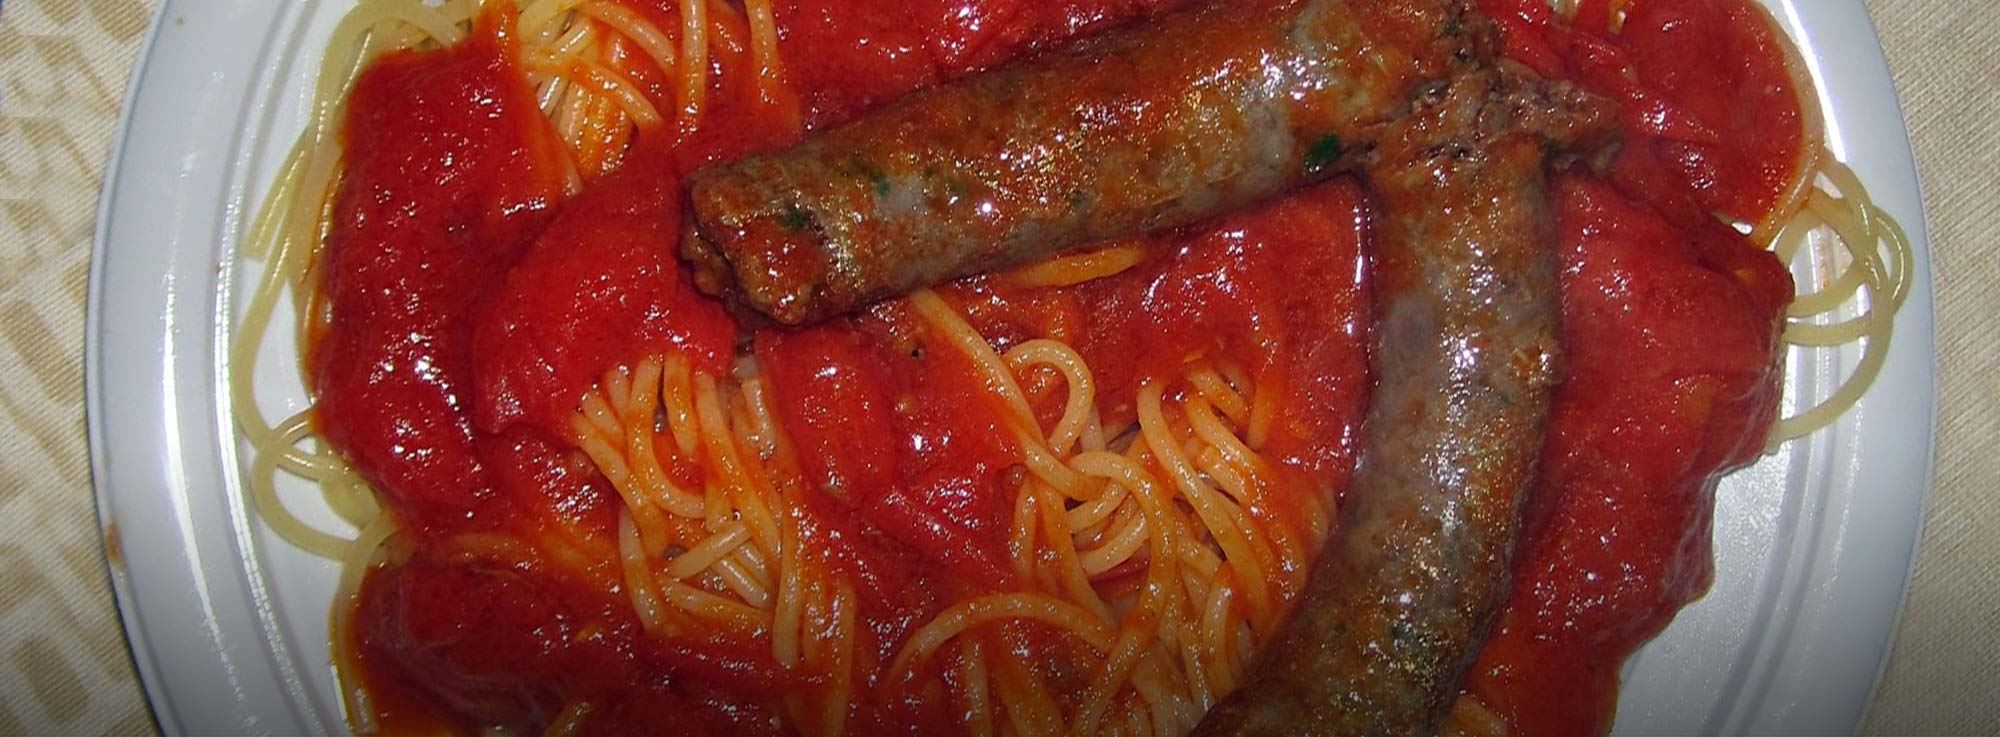 Ricetta: spaghetti e salsiccia di cavallo al pomodoro